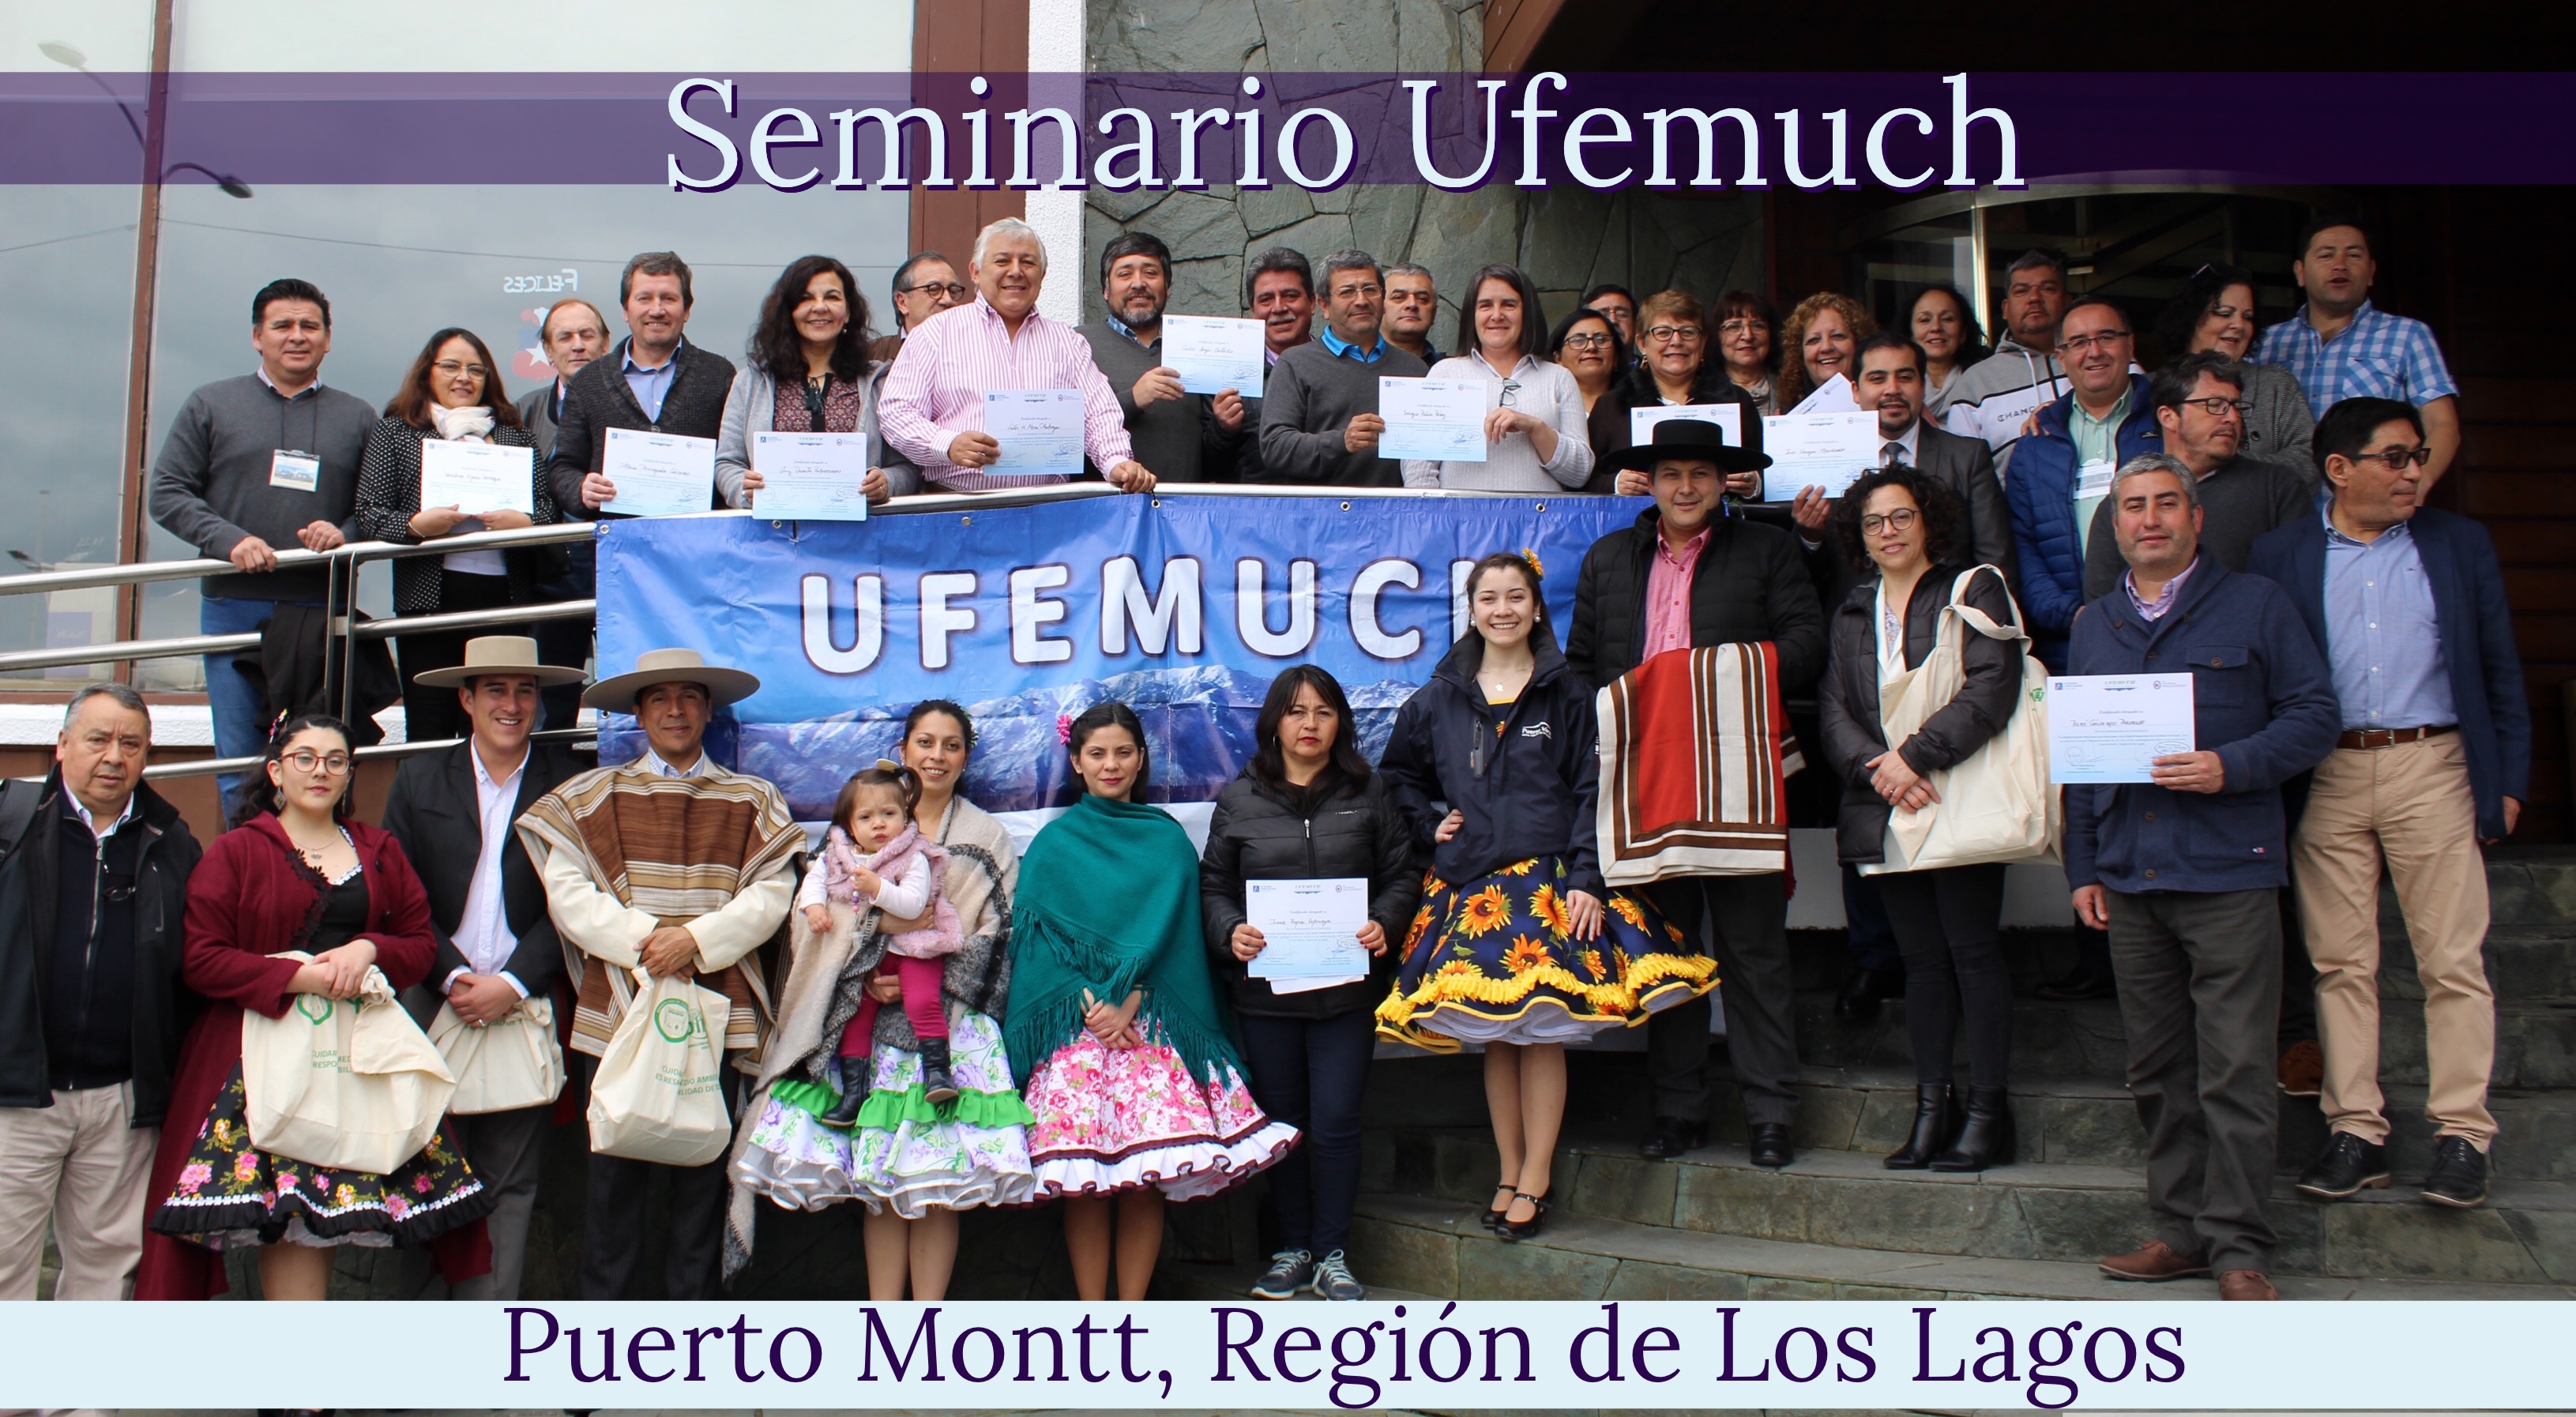 Seminario Ufemuch en Puerto Montt concluye con éxito